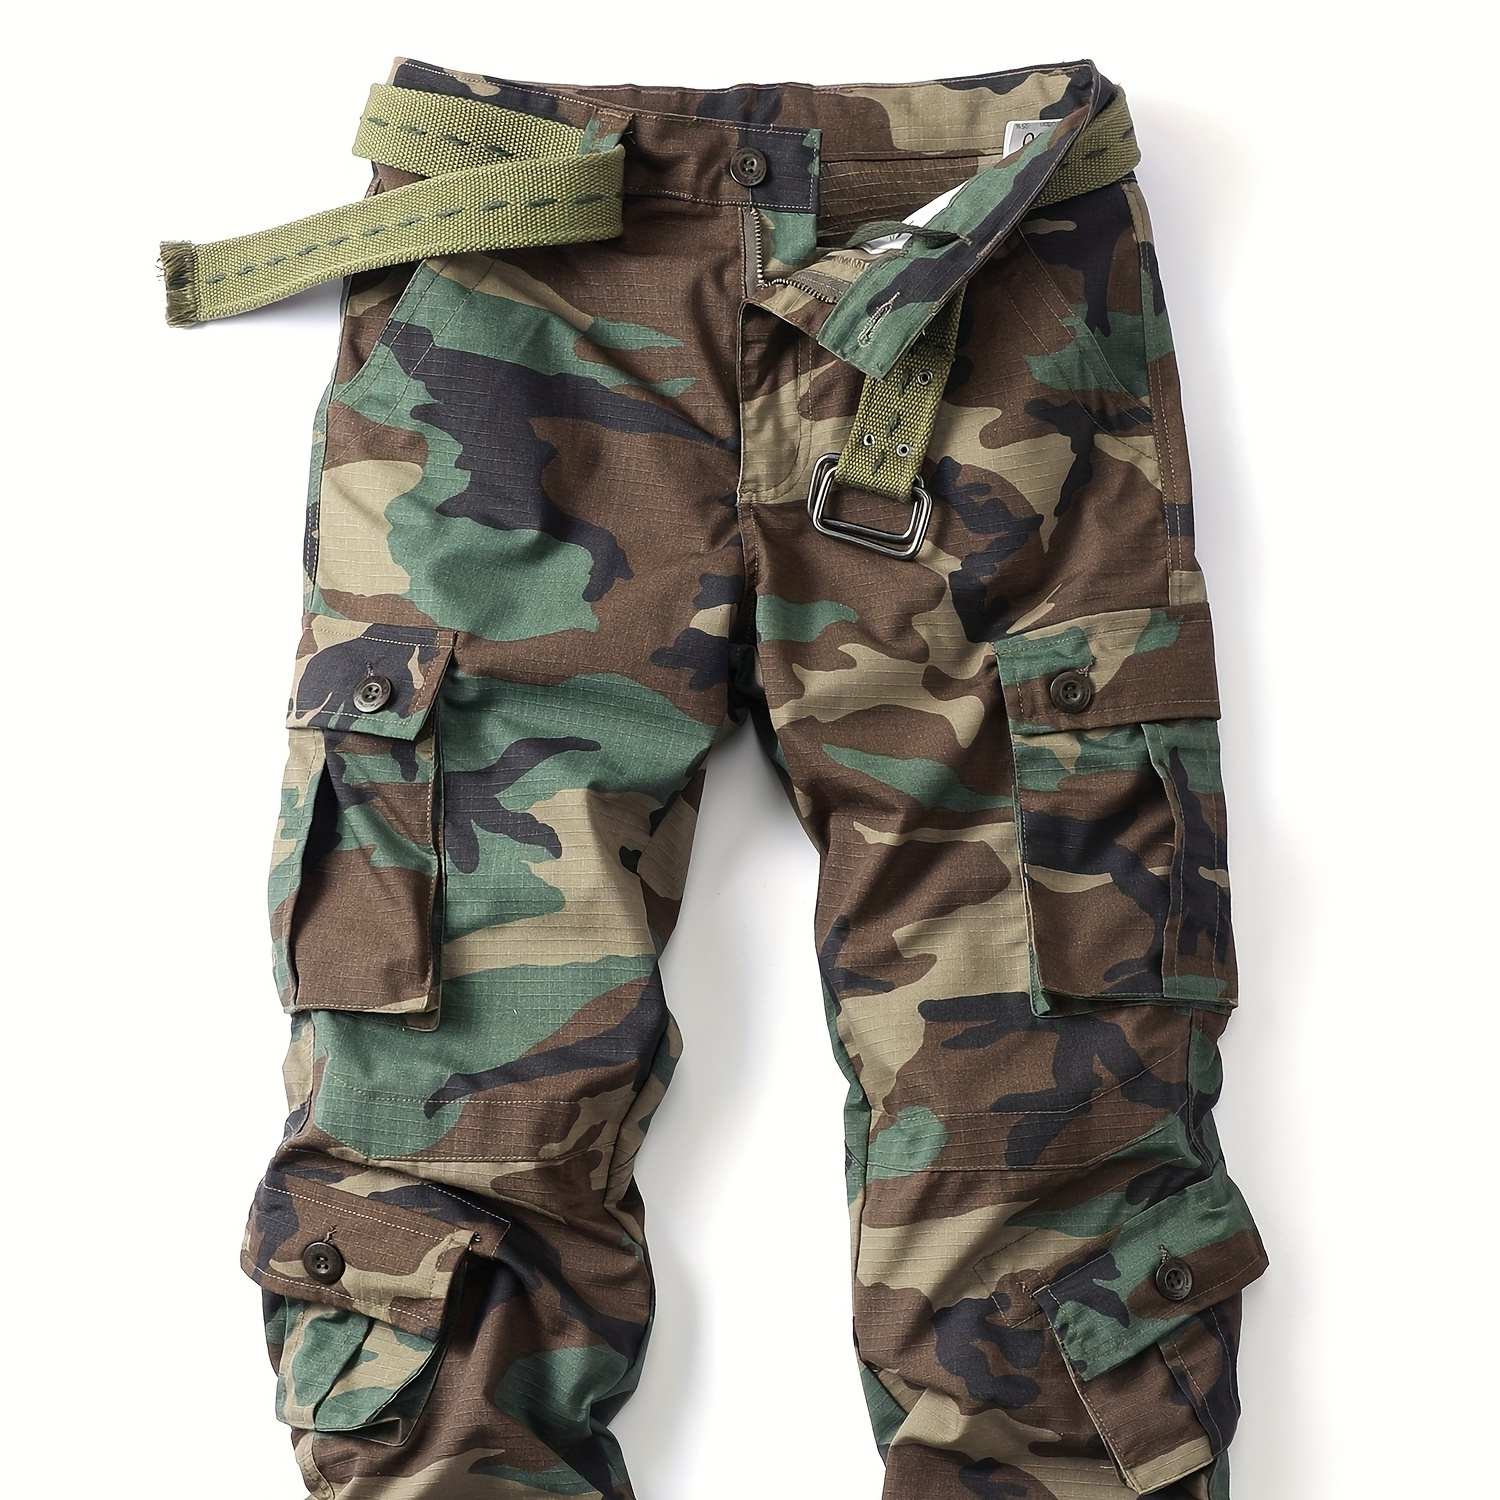 

Pantalon cargo droit pour hommes en coton mélangé, motif camouflage, plusieurs poches à rabat, pantalon d'extérieur ample et décontracté, pantalon de travail tactique pour hommes